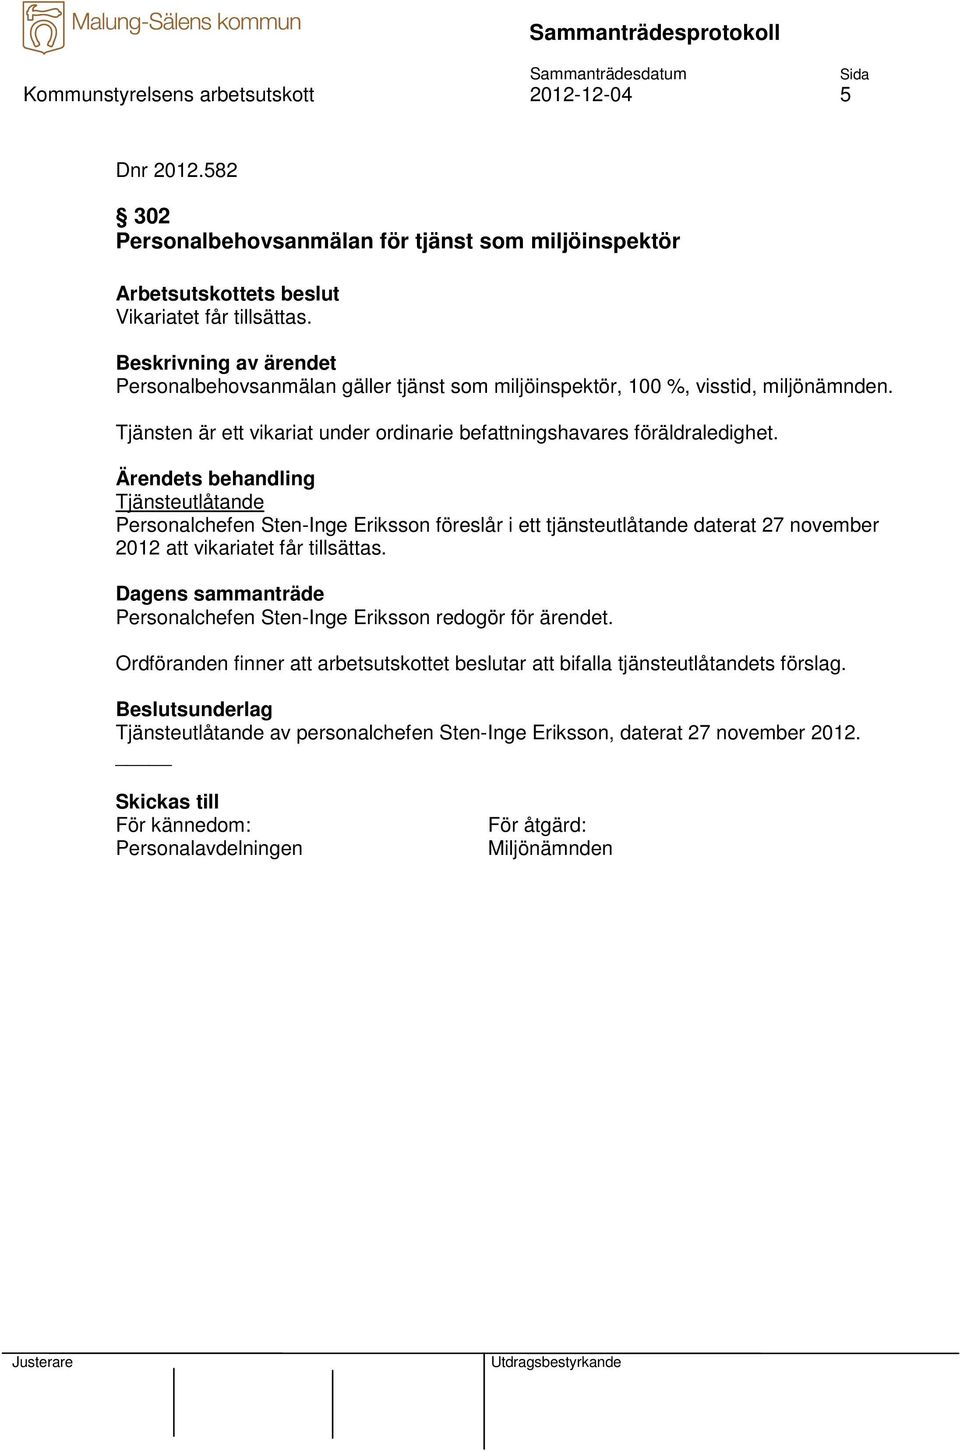 Personalchefen Sten-Inge Eriksson föreslår i ett tjänsteutlåtande daterat 27 november 2012 att vikariatet får tillsättas.